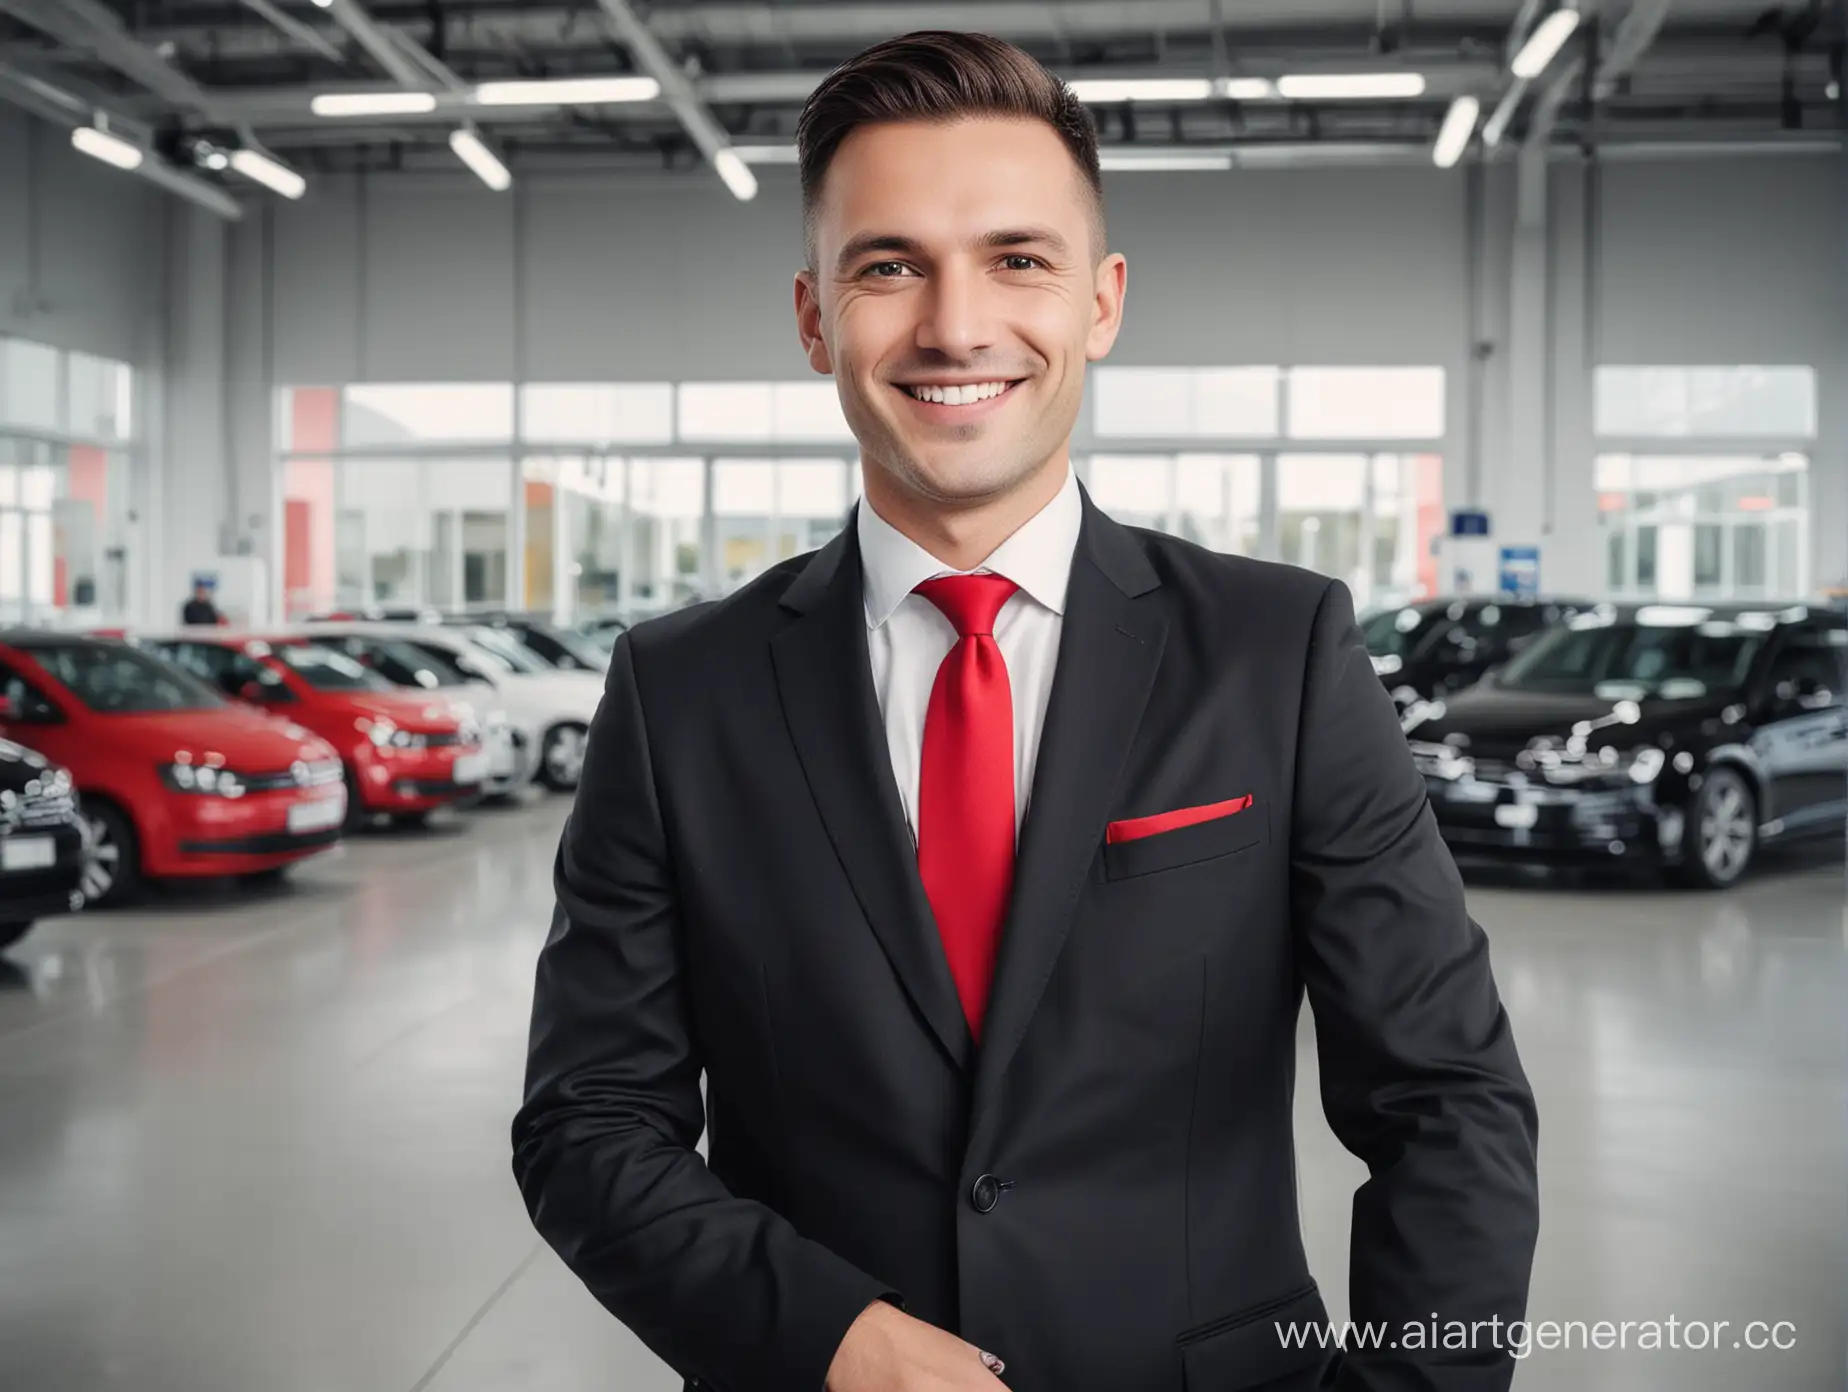 фон сервисный центр Volkswagen, менеджер в черном костюме с красным галстуком, смотрит на нас и улыбается